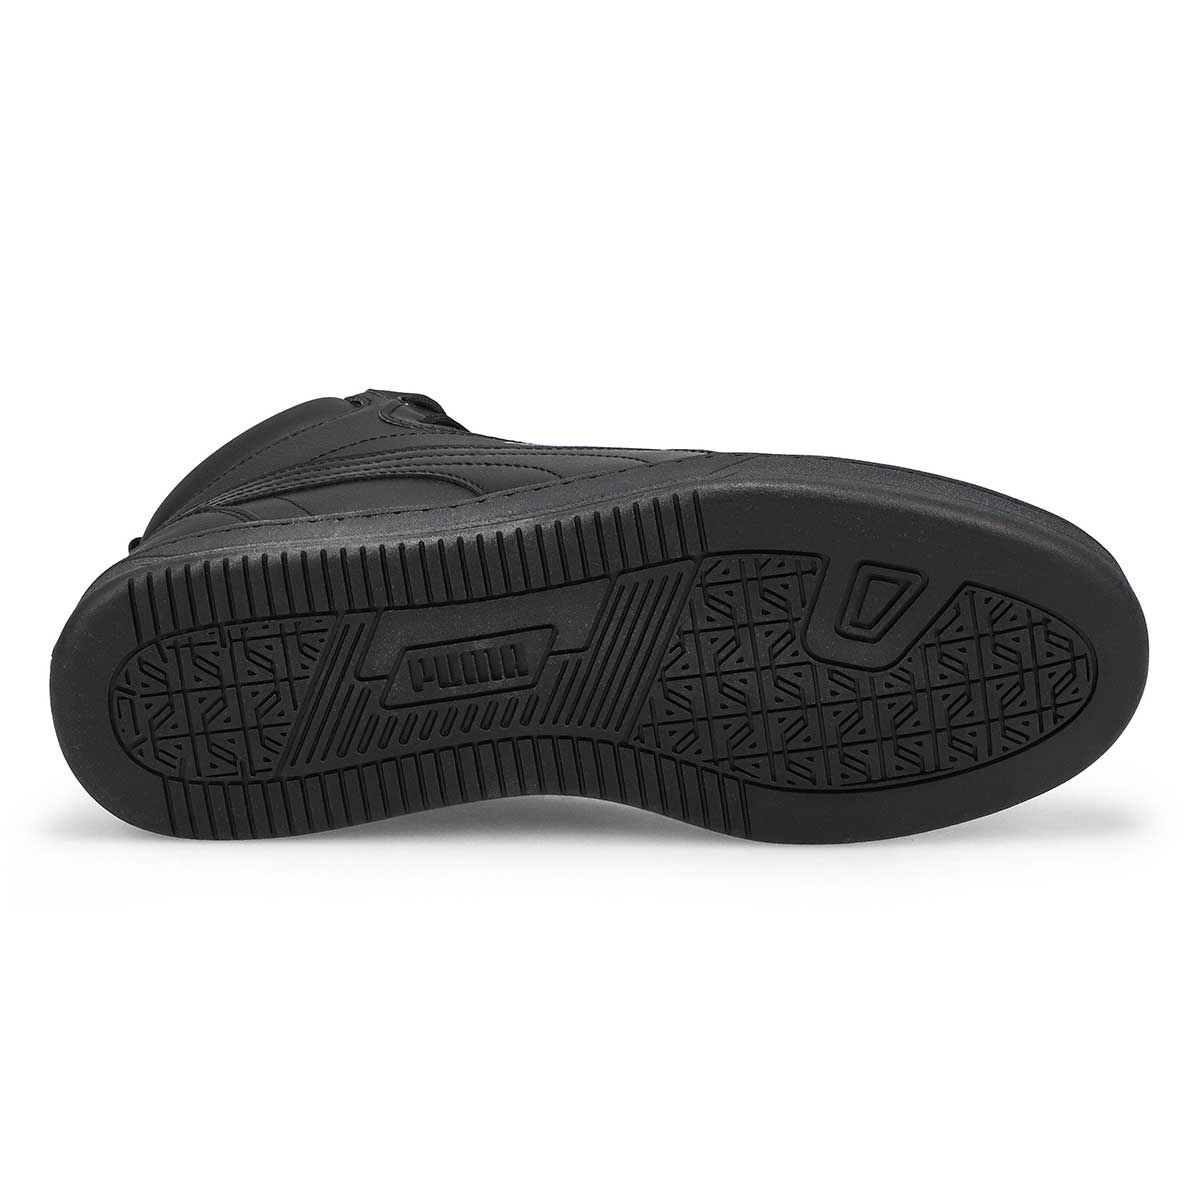 Men's Caven 2.0 Mid Hi-Top Sneaker -Black